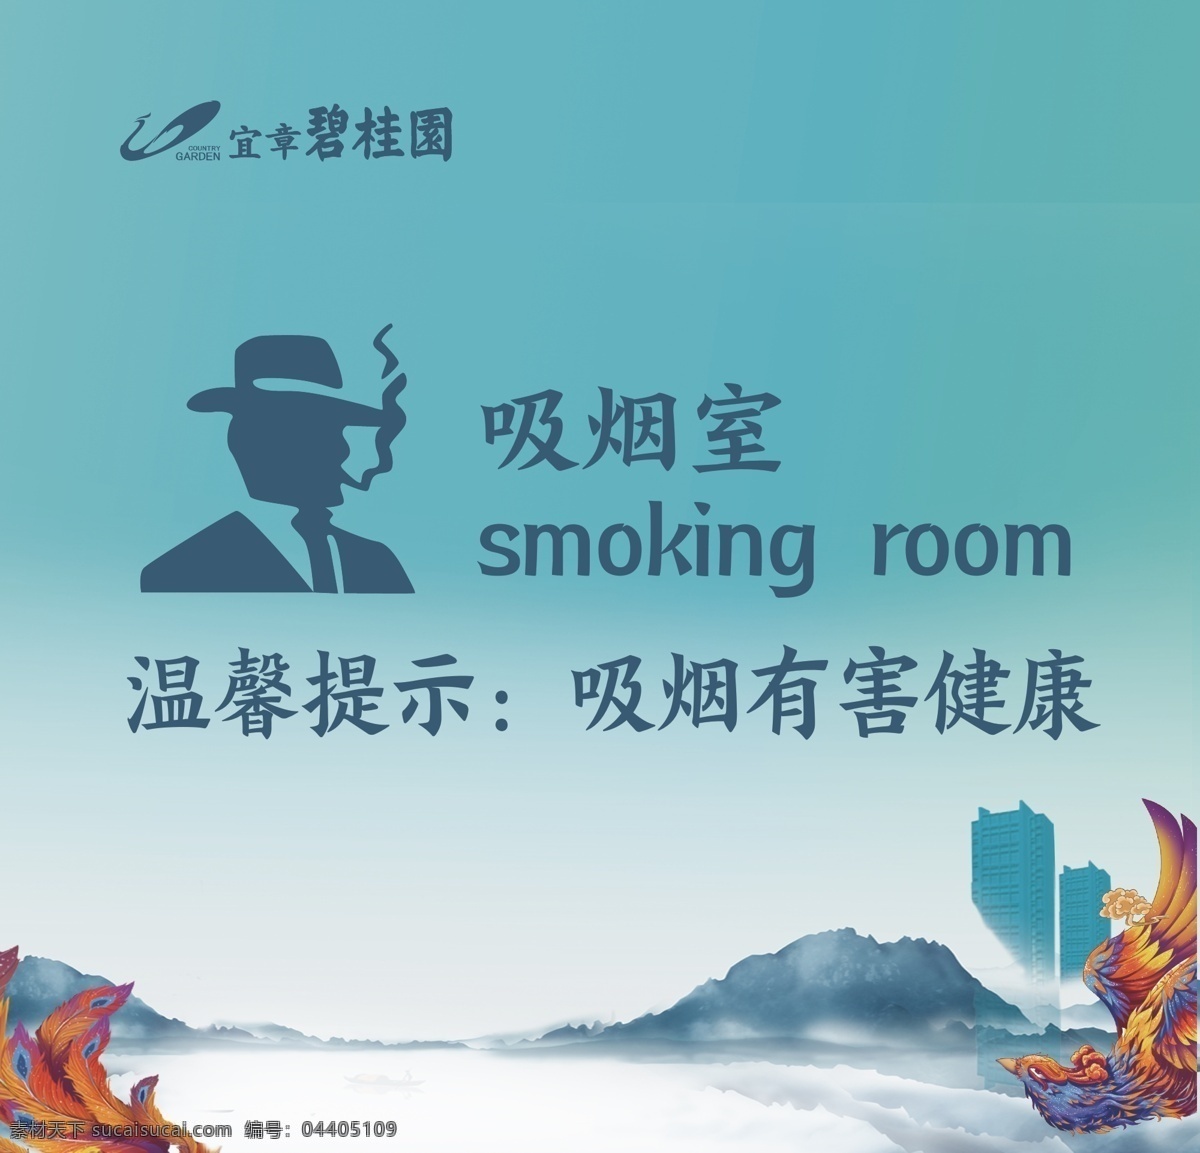 吸烟室 吸烟区 碧桂园 温馨提示 吸烟有害健康